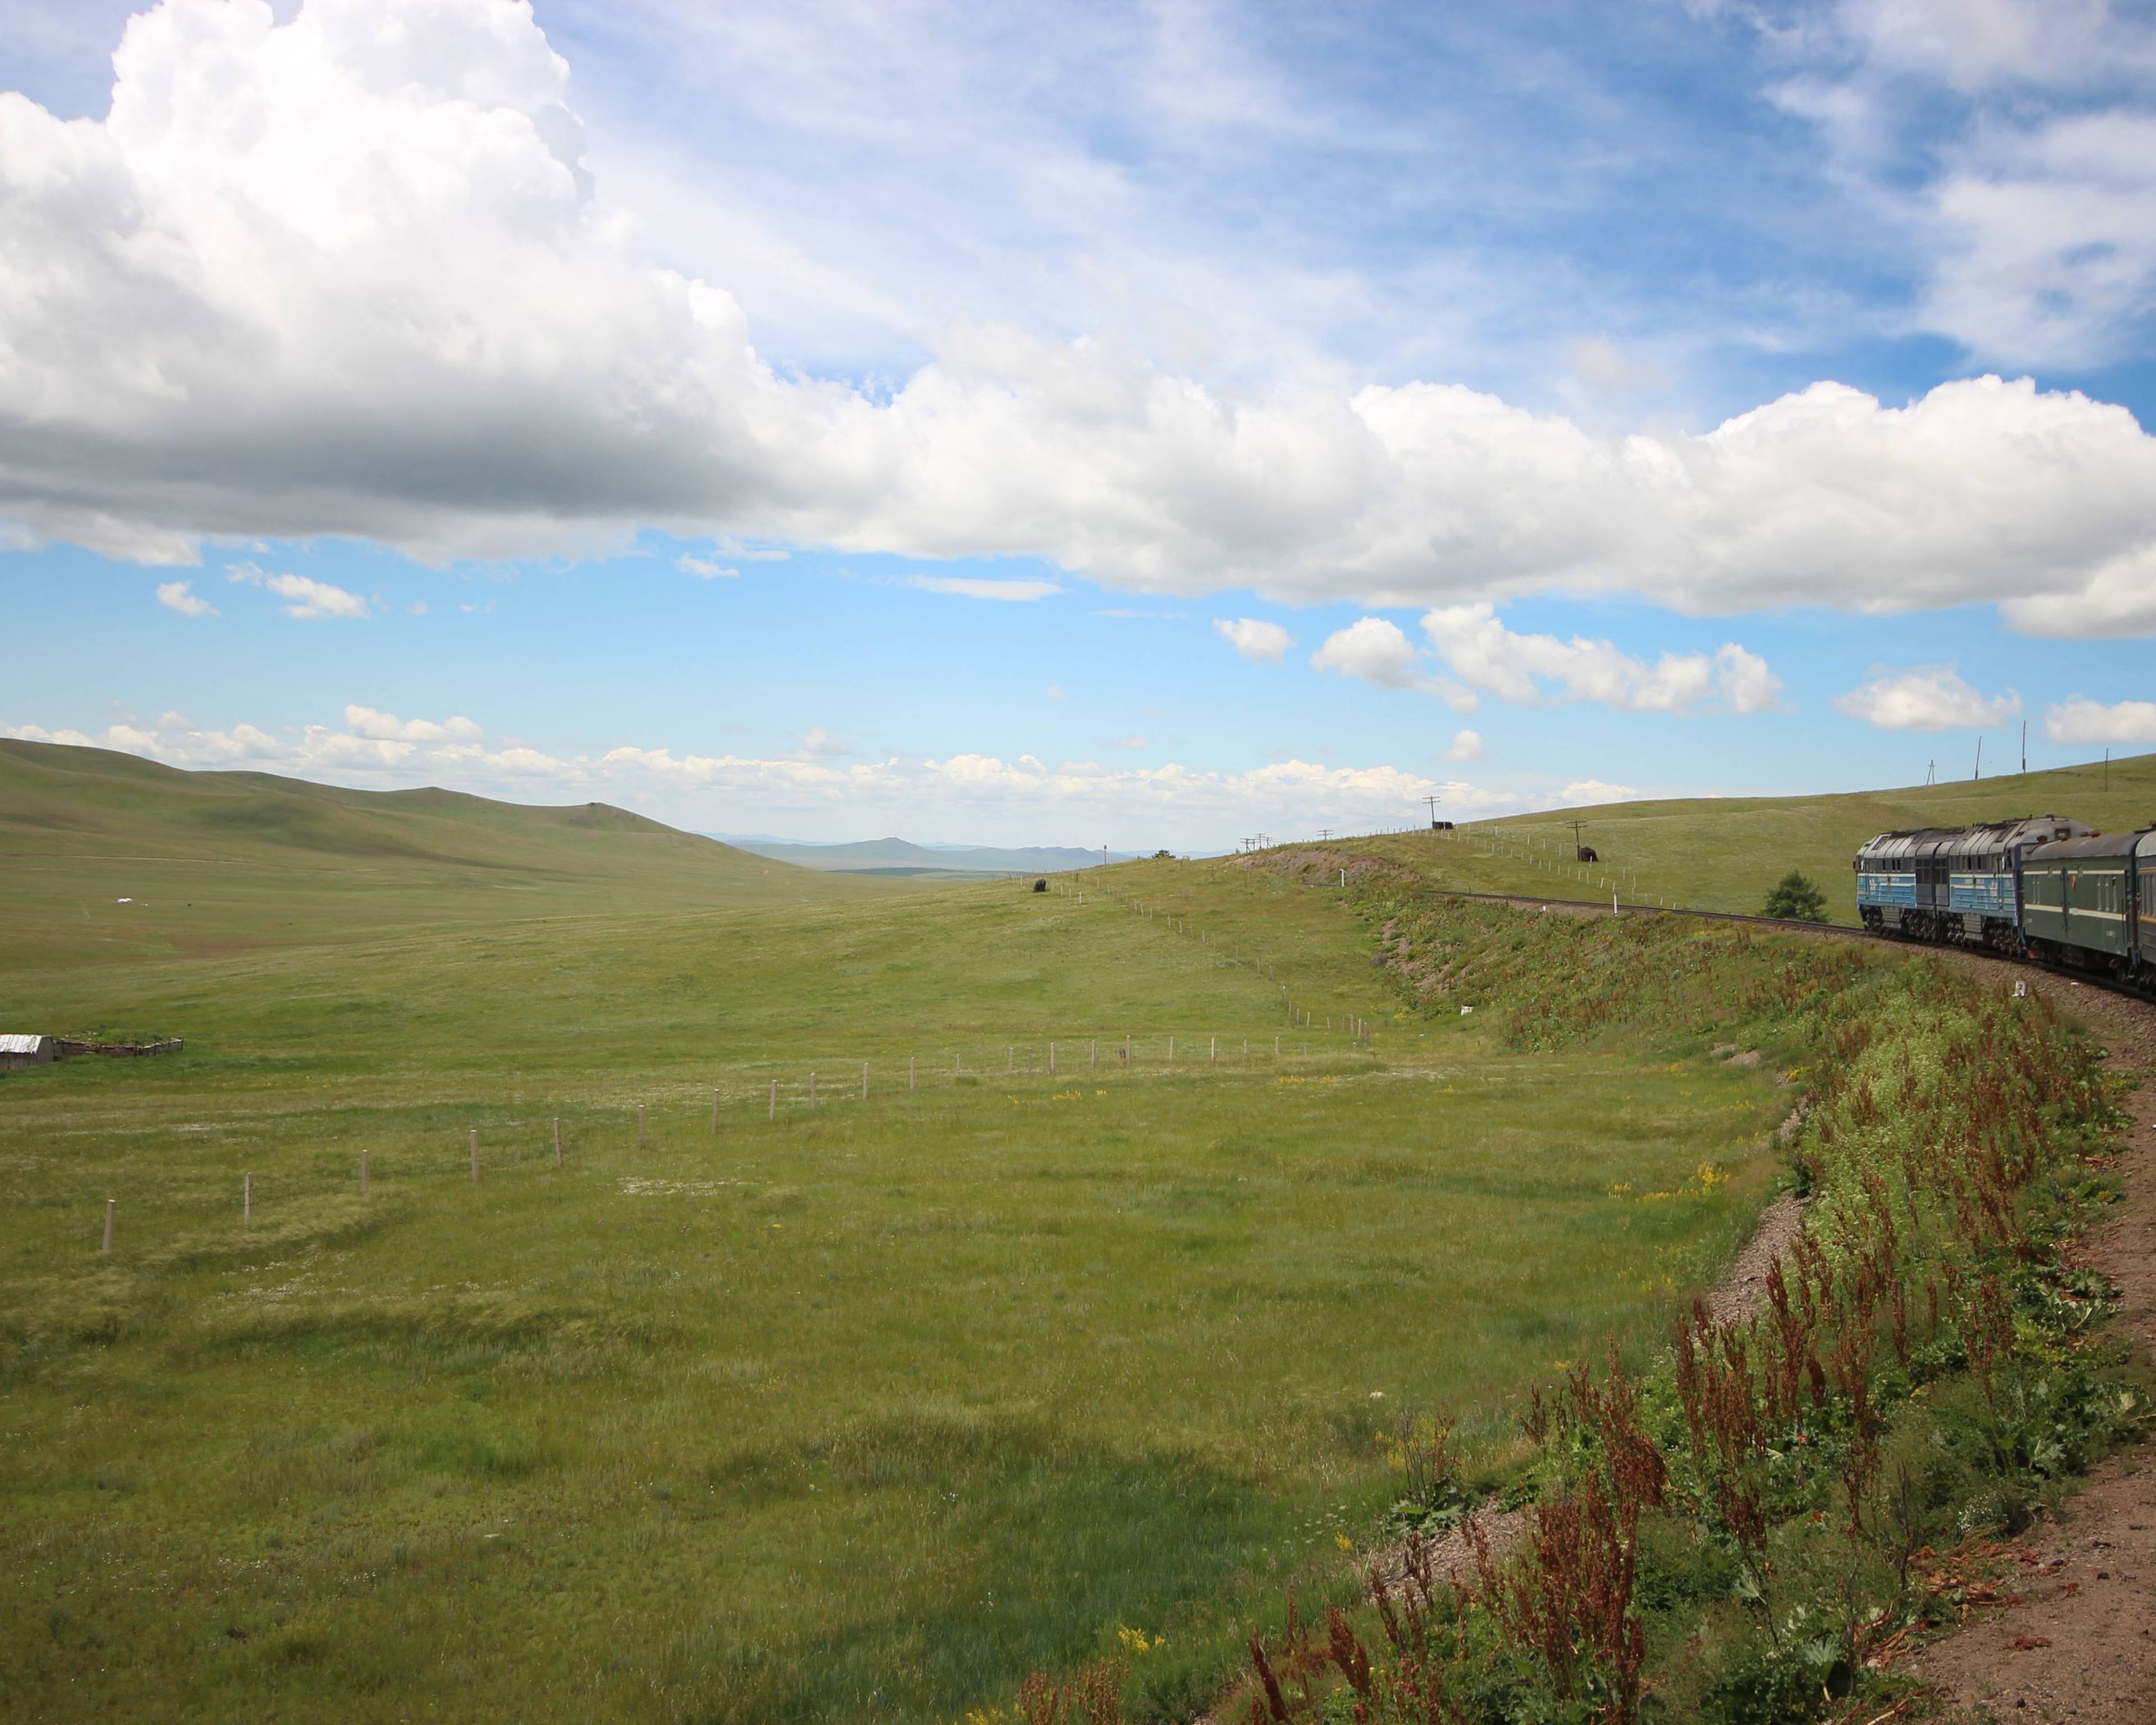 Expérience de la vie nomade dans la steppe mongole en petit groupe